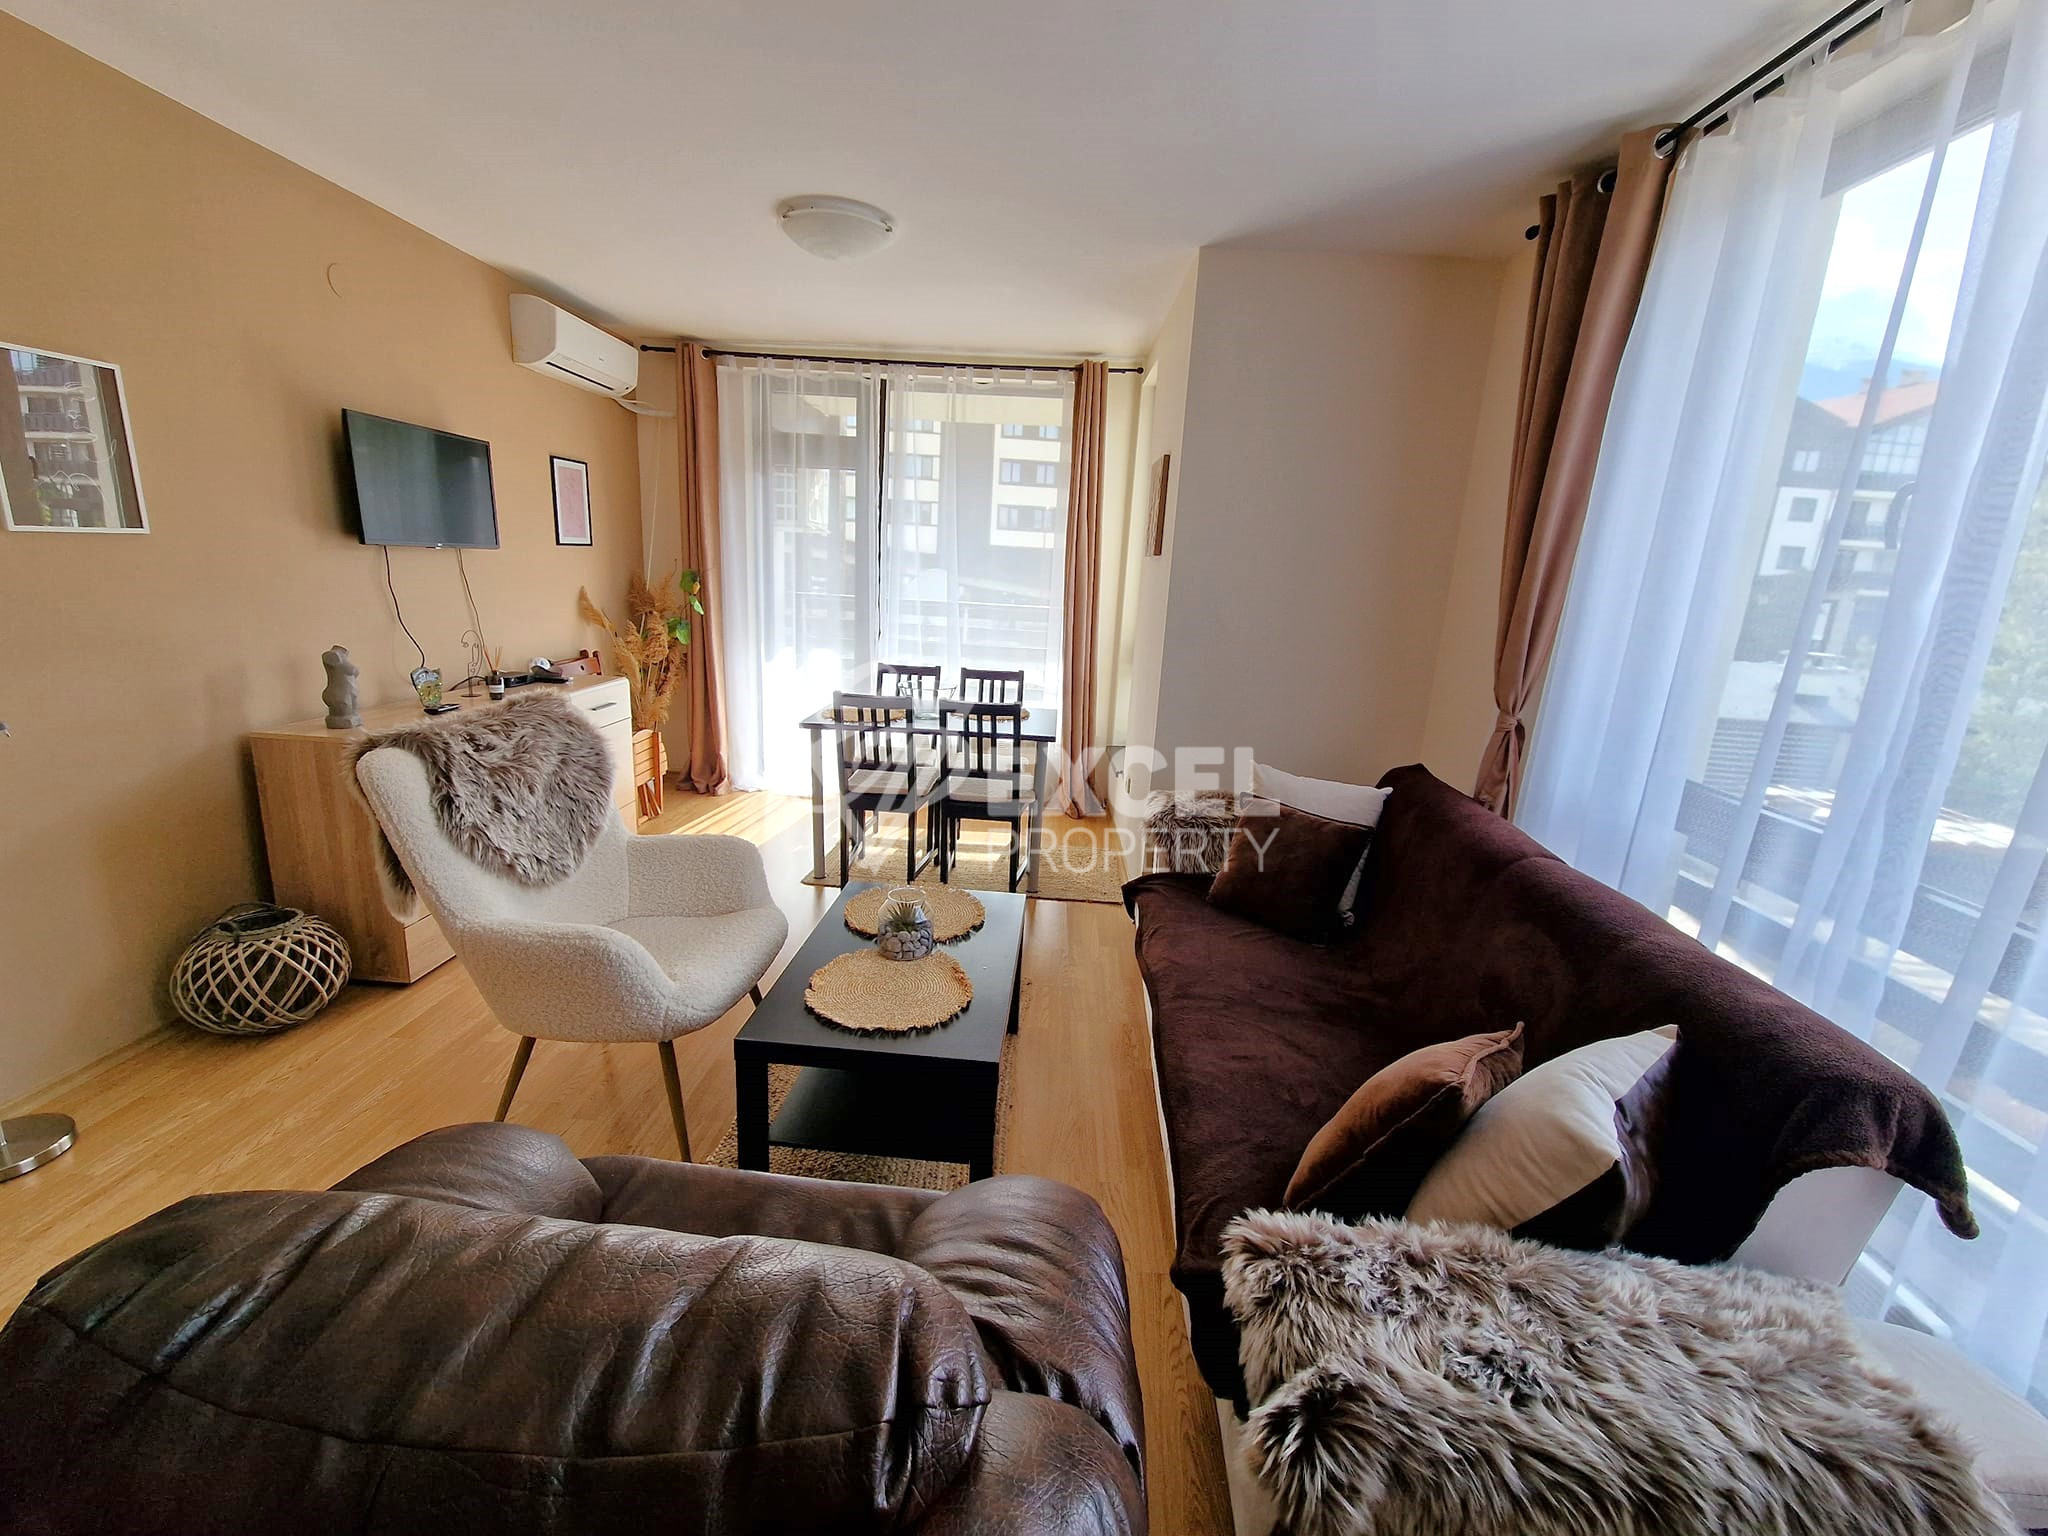 Двустаен апартамент с климатик за продажба в Aspen Resort, район Разлог! Изгодна цена!